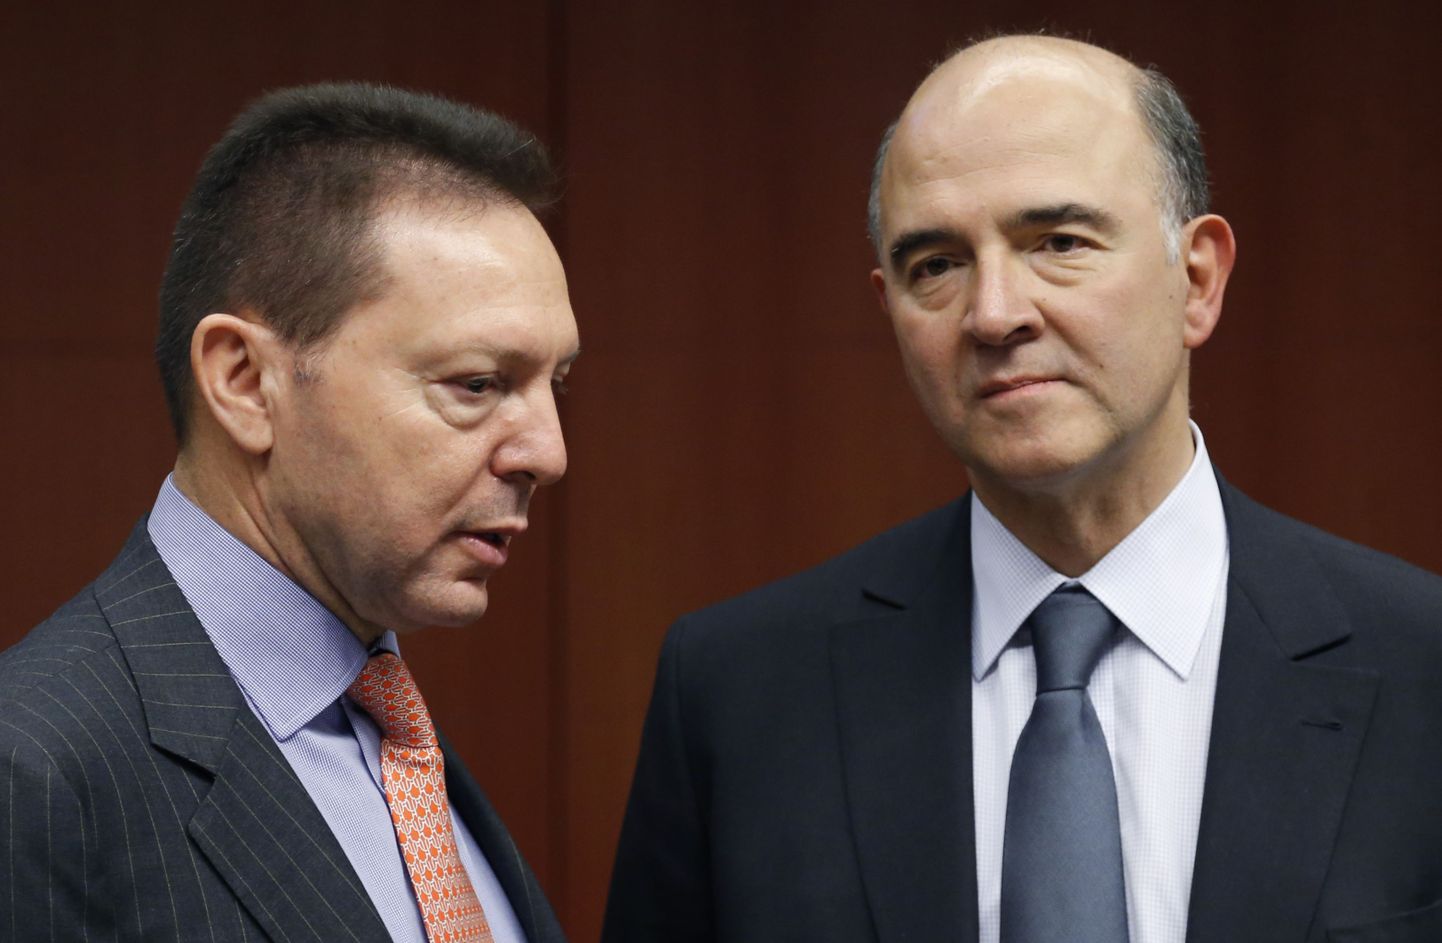 Kreeka rahandusminister Yannis Stournaras ja tema Prantsusmaa kolleeg Pierre Moscovici